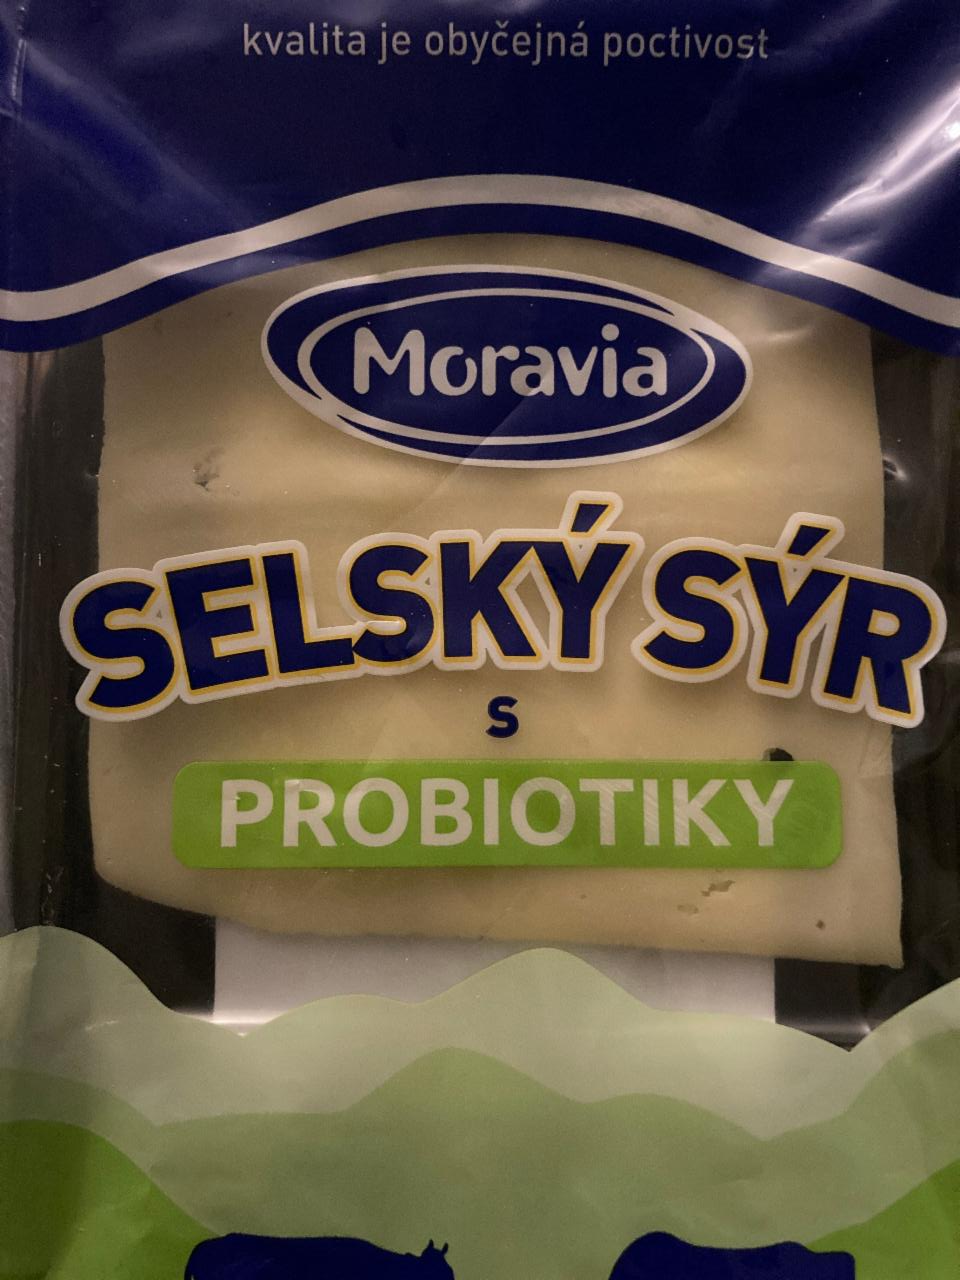 Fotografie - Selský sýr s probiotiky Moravia